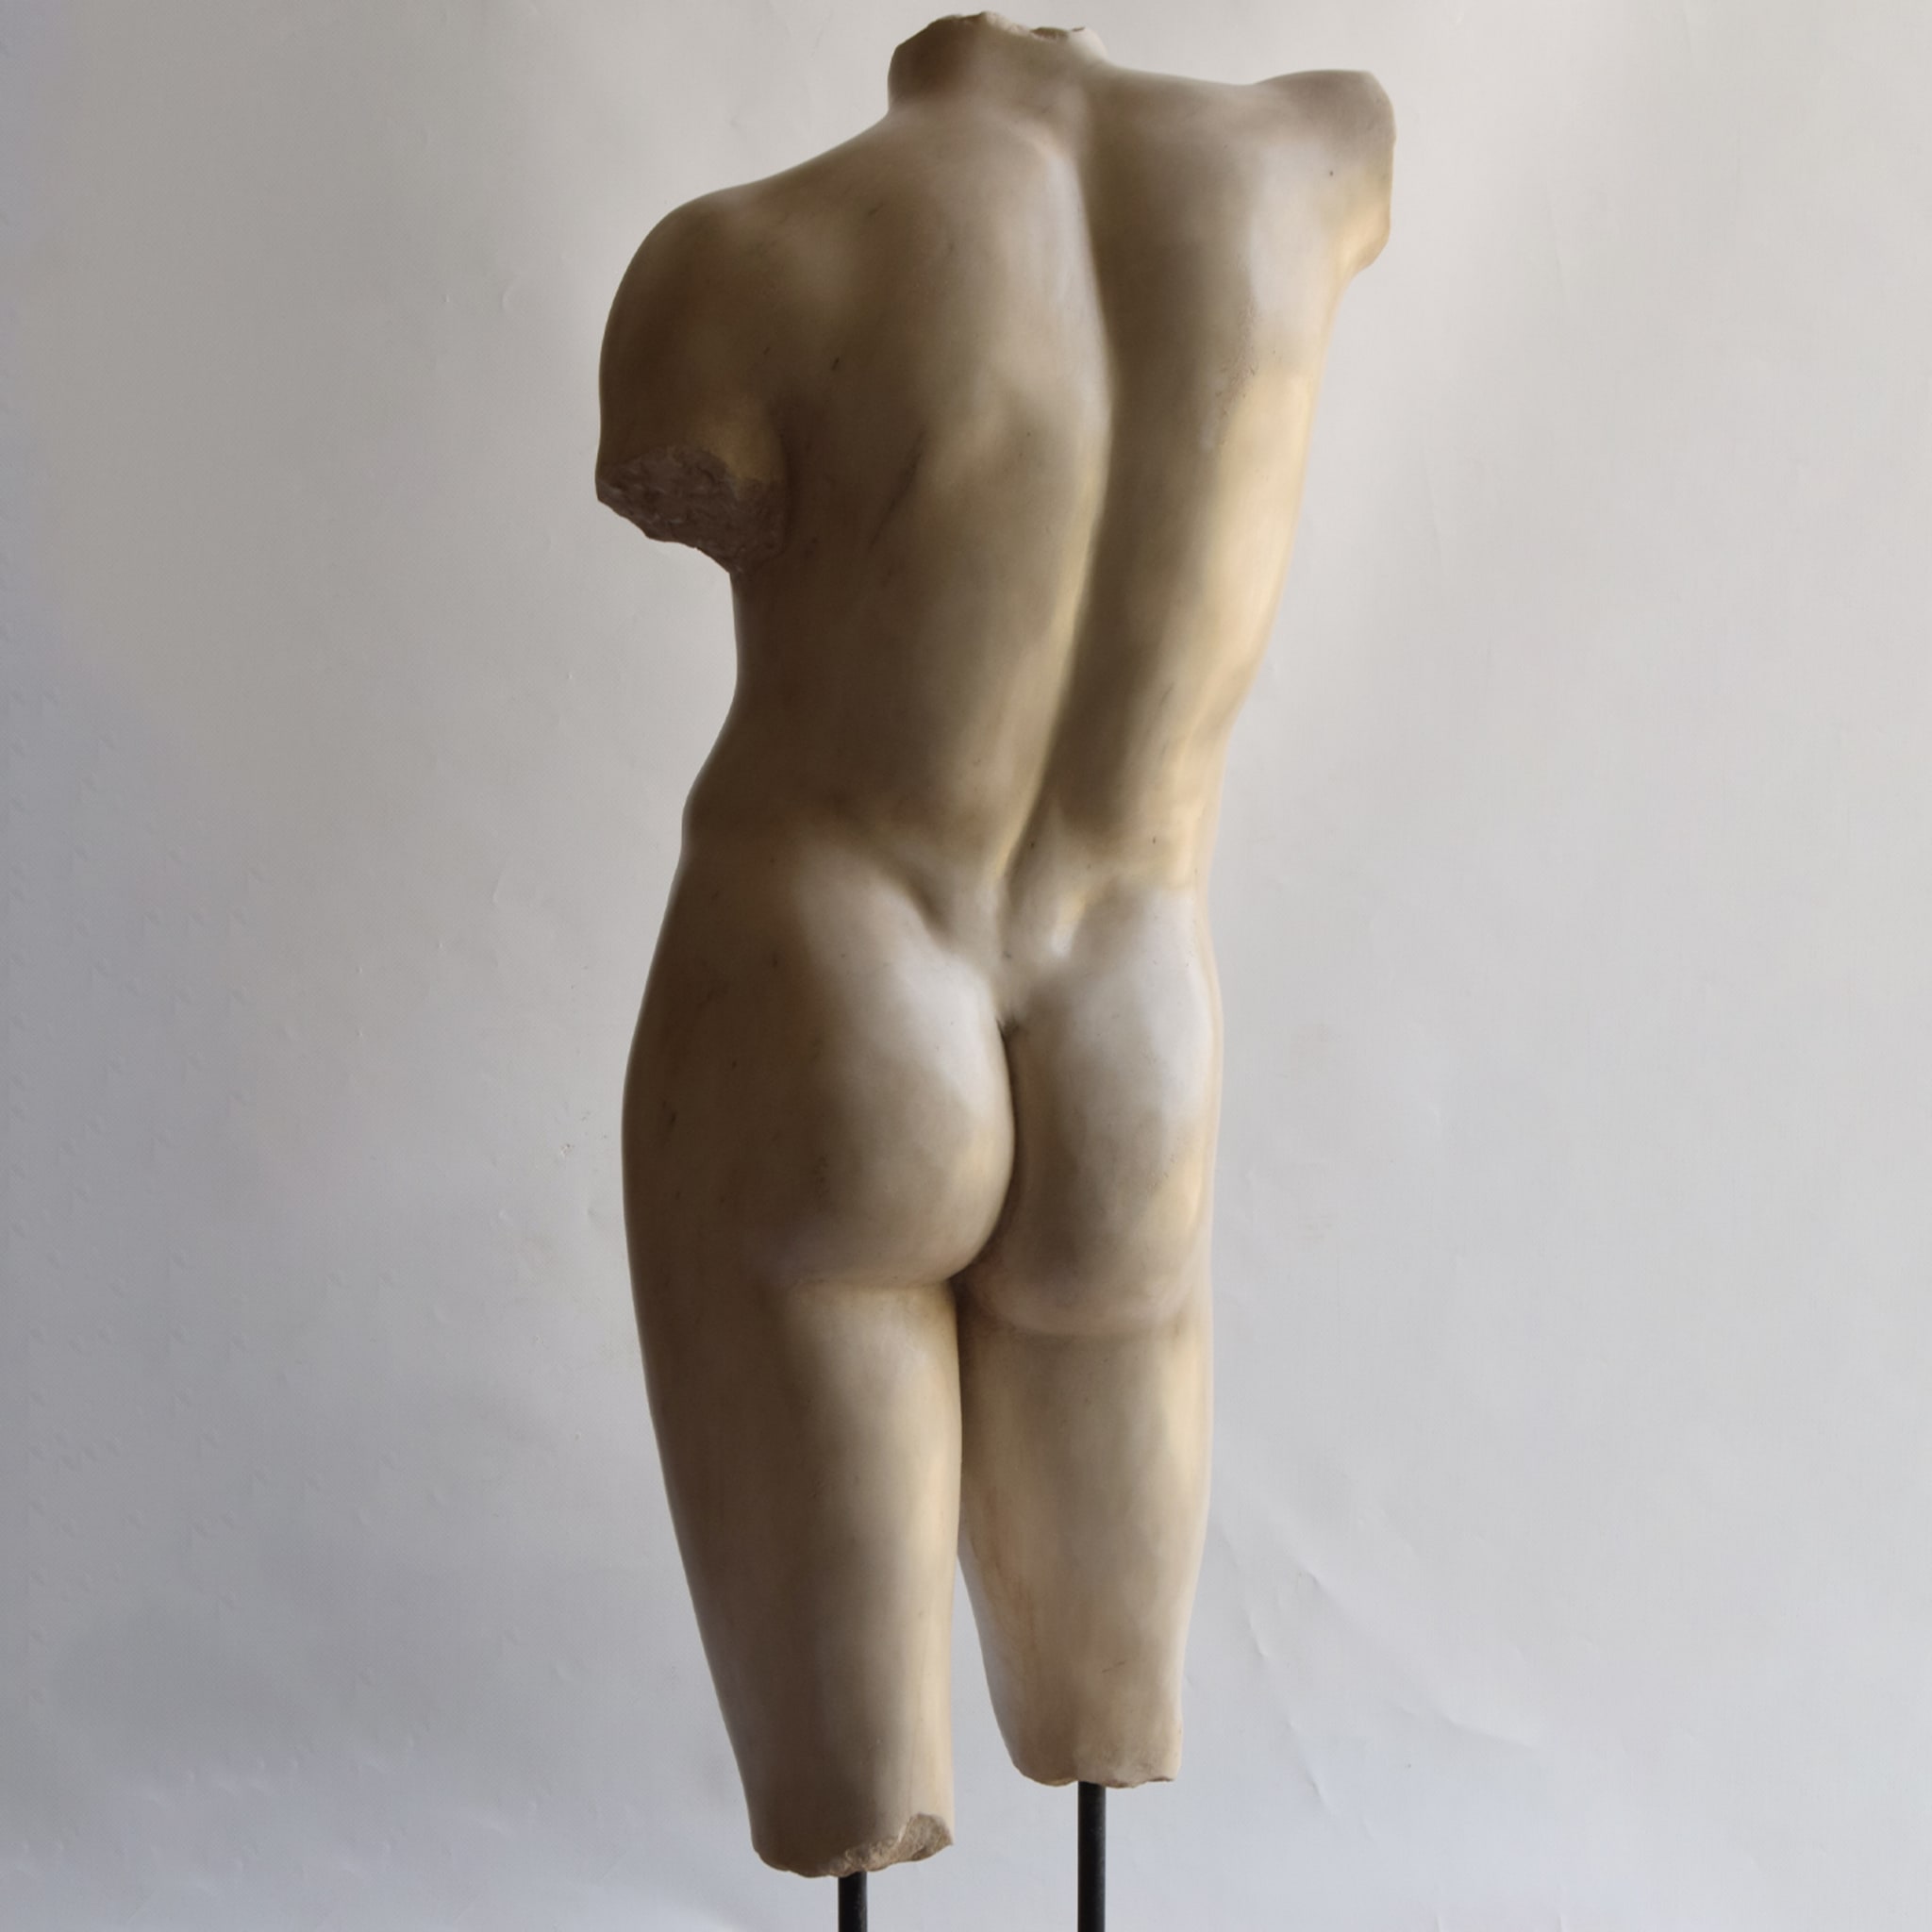 Eleusi Male Torso Sculpture - Alternative view 3